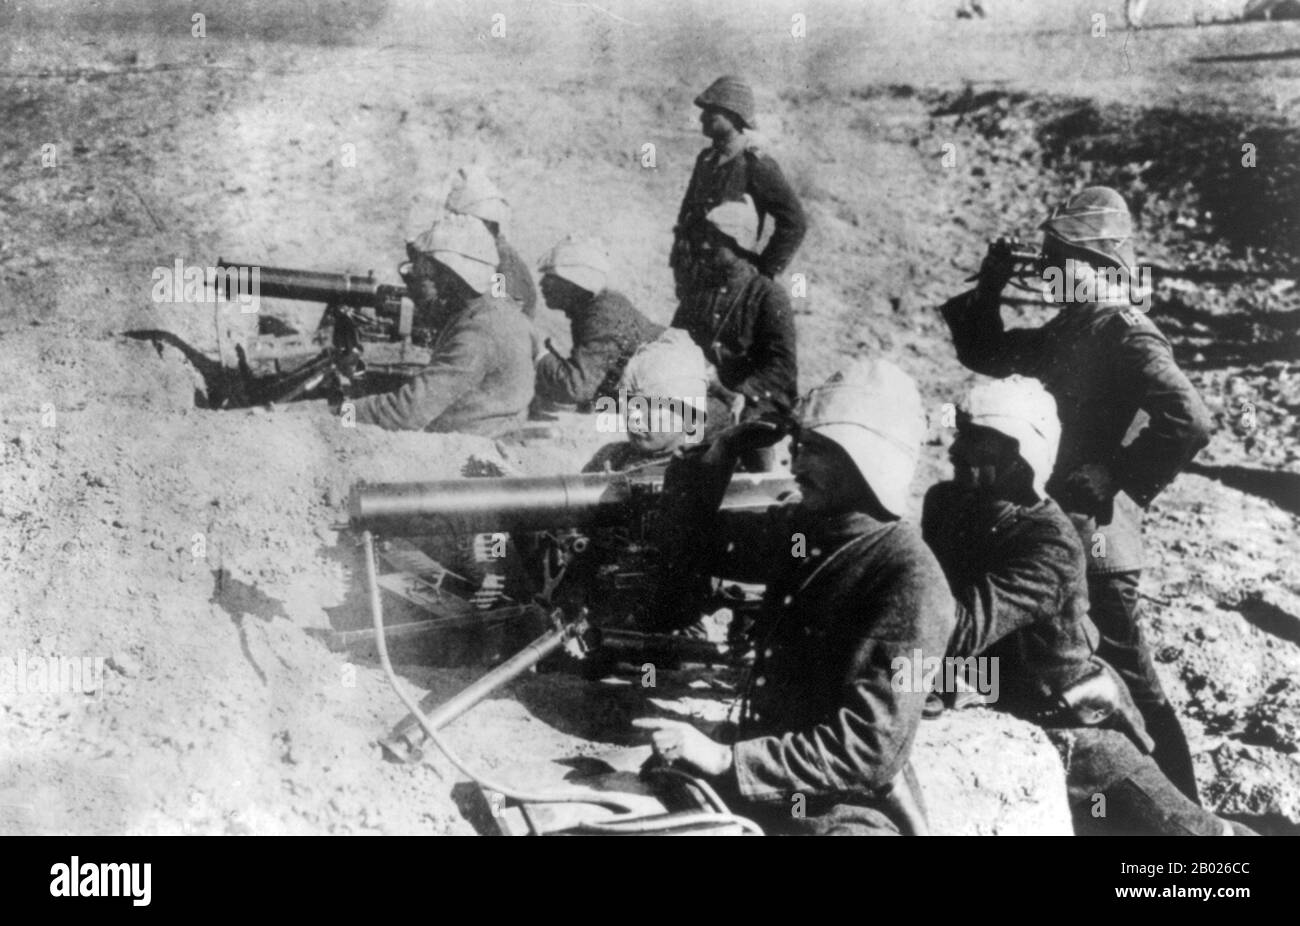 Die Gallipoli-Kampagne, auch bekannt als Dardanellen-Kampagne oder Schlacht von Gallipoli oder Schlacht von Çanakkale (türkisch: Çanakkale Savaşı), fand auf der Halbinsel Gallipoli im Osmanenreich (heute Gelibolu in der heutigen Türkei) zwischen dem 25. April und dem 9. Januar des Jahres 1916 während des Ersten Weltkriegs statt. Eine gemeinsame britische und französische Operation wurde durchgeführt, um die osmanische Hauptstadt von Istanbul (Istanbul) zu erobern und einen Seeweg nach Russland zu sichern. Der Versuch scheiterte mit schweren Verletzten auf beiden Seiten. Die Kampagne galt als einer der größten Siege der Türken und spiegelte sich wider Stockfoto